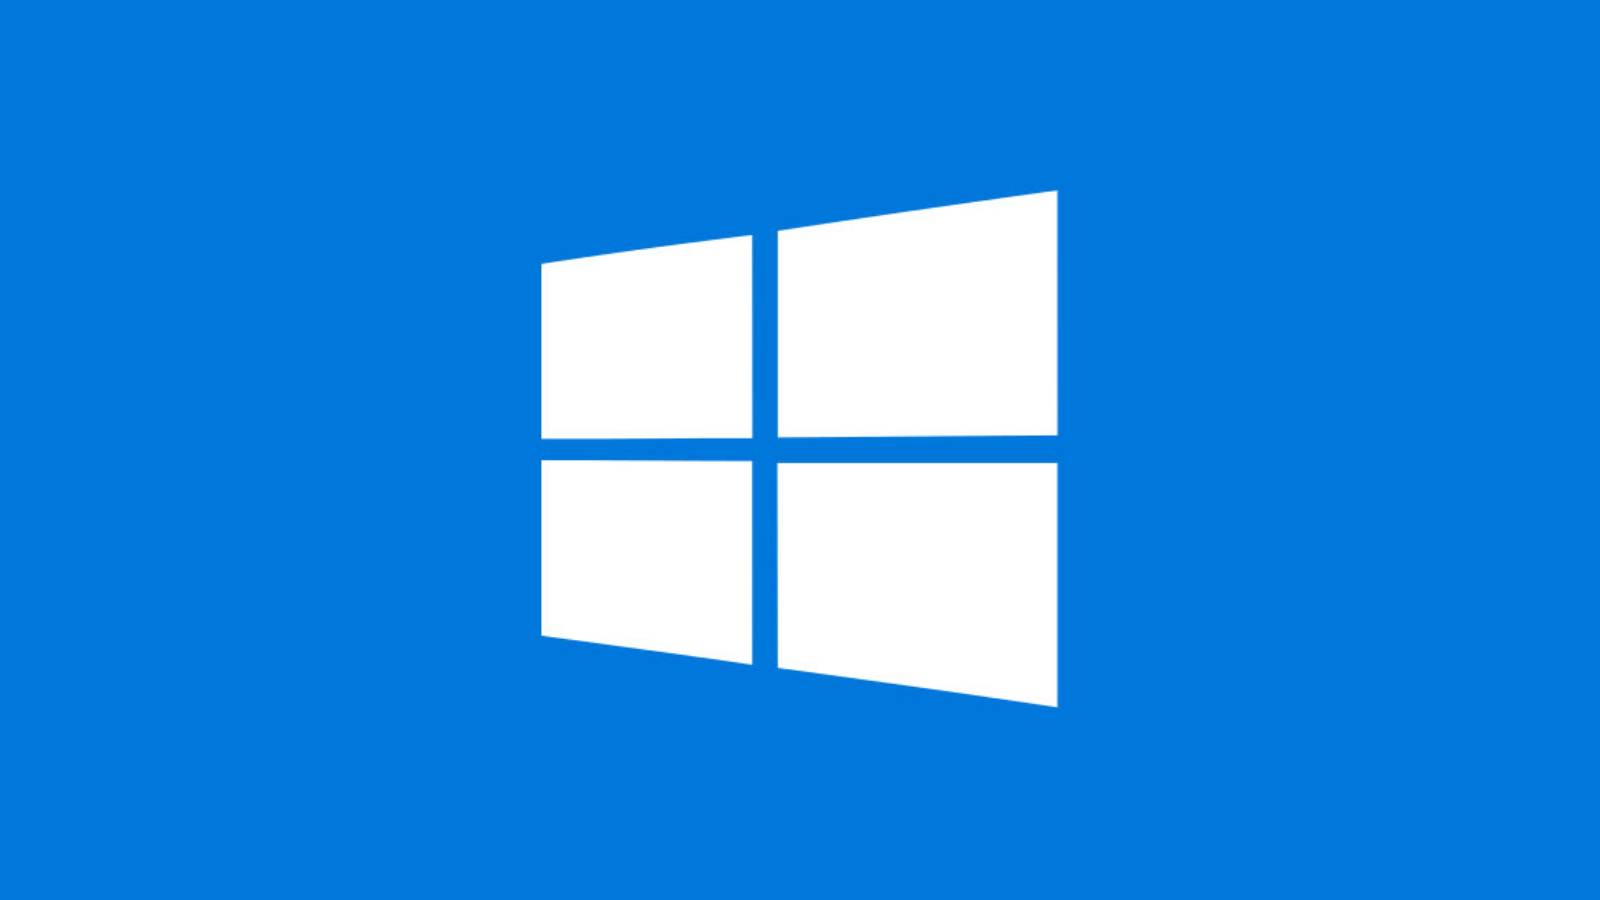 Windows 10 Mai 2020 Update